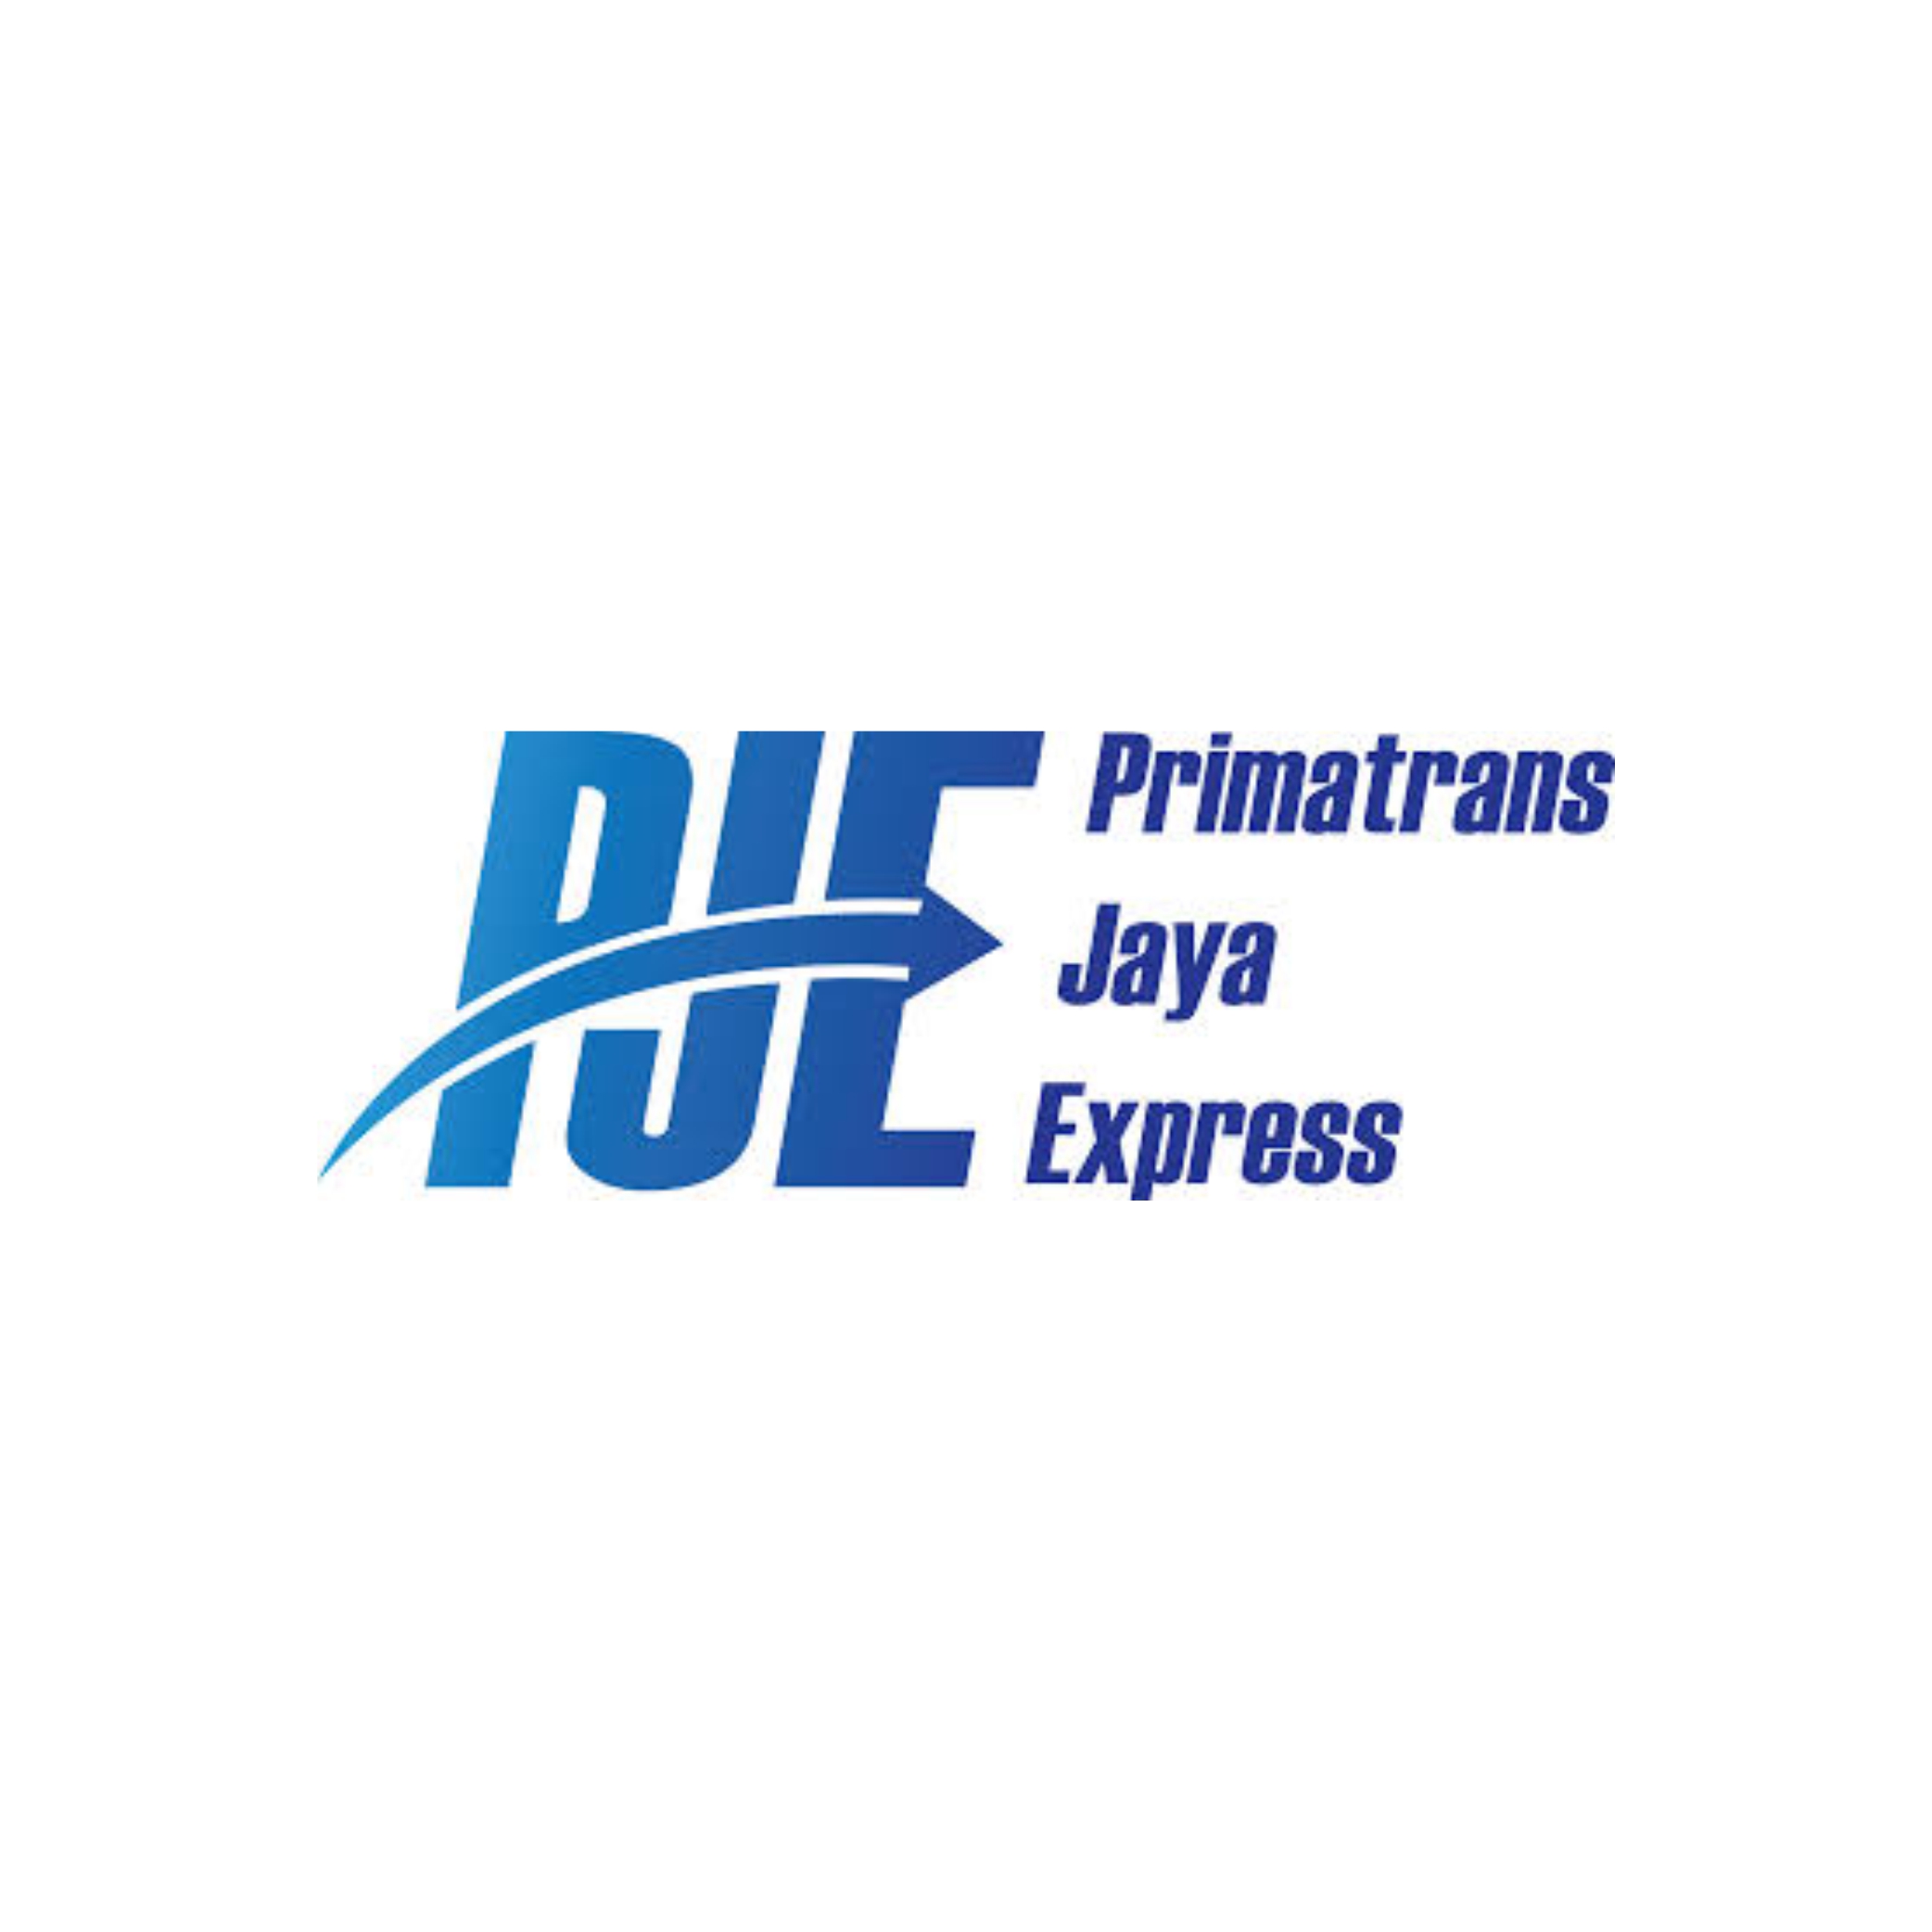 Primatrans Jaya Express